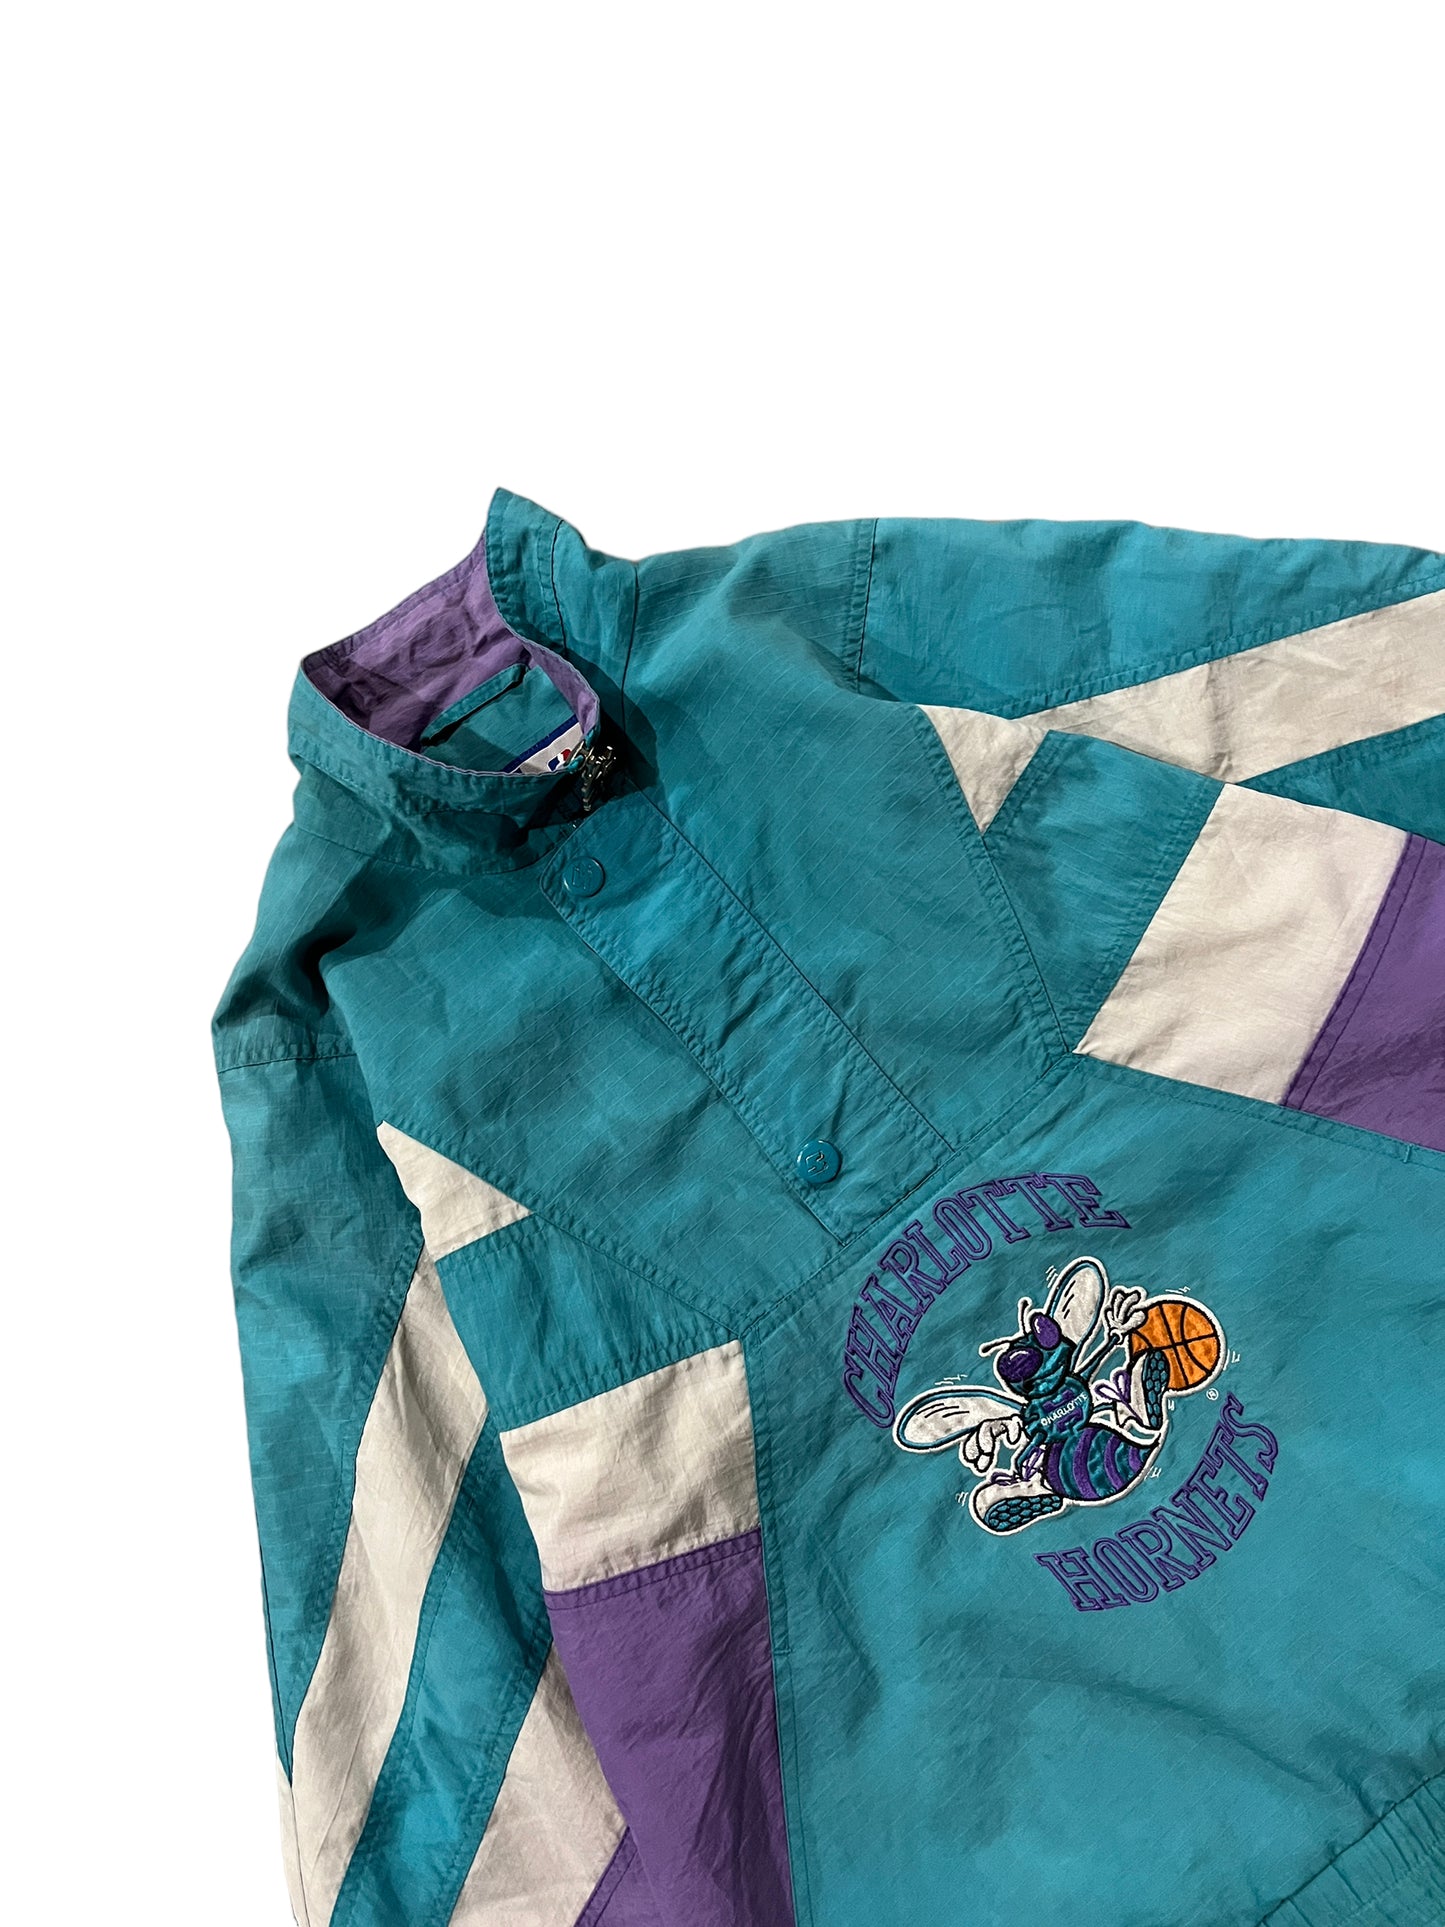 Vintage Starter Charlotte Hornets Half Zip Jacket